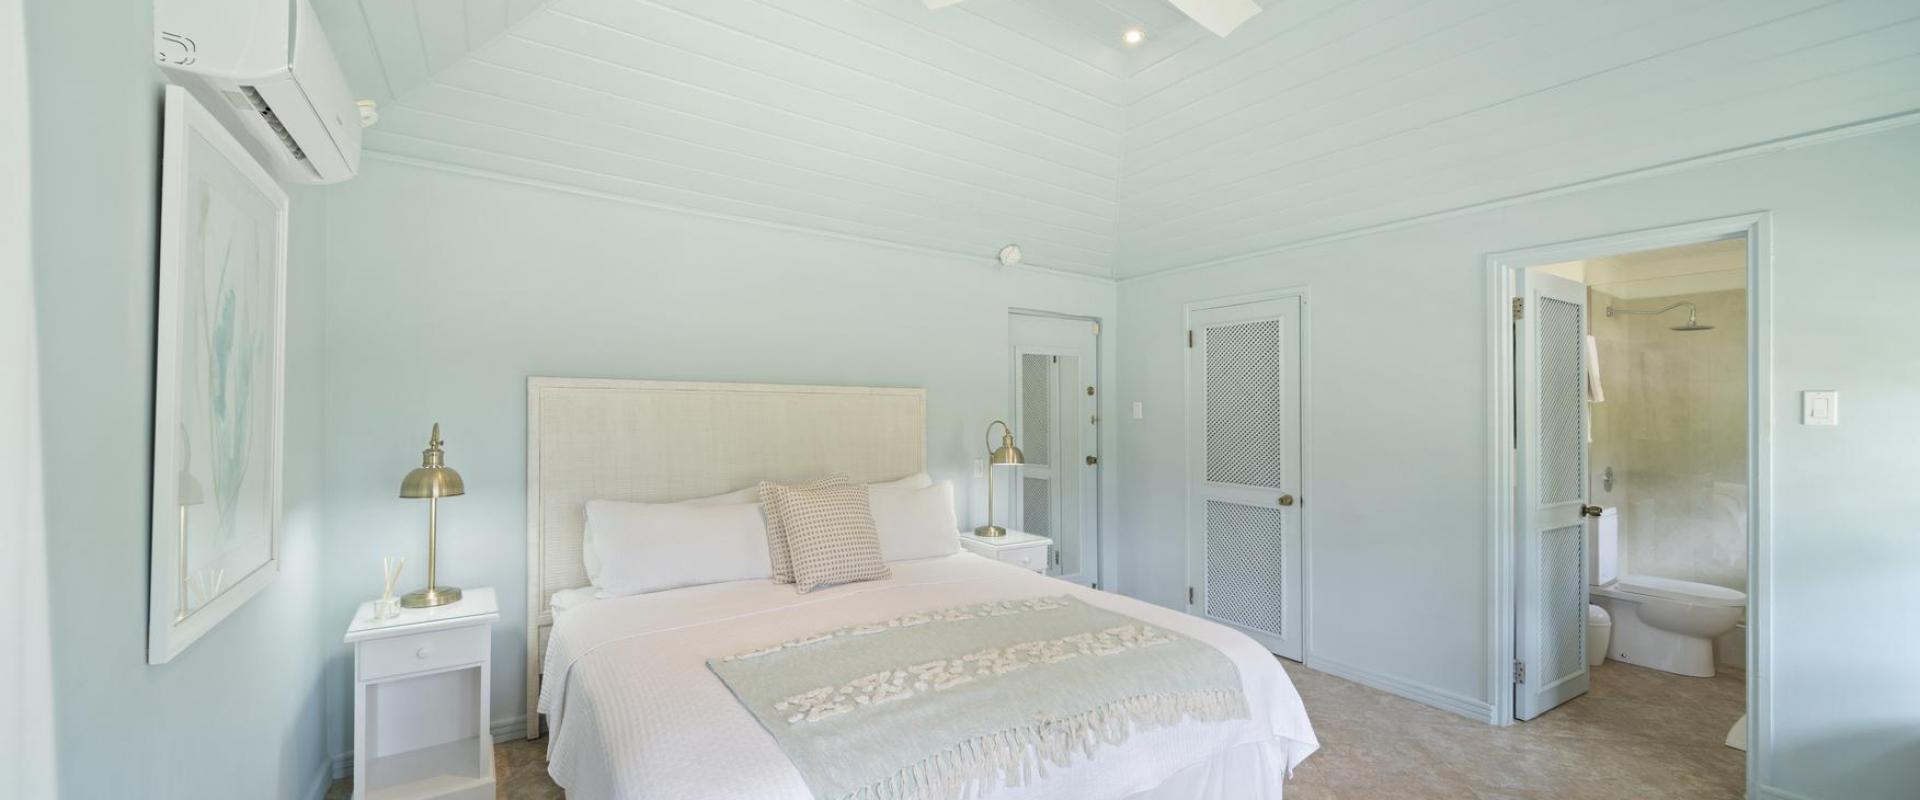 Phoenix Villa Sandy Lane Barbados Bedroom 3 With Ensuite Bathroom